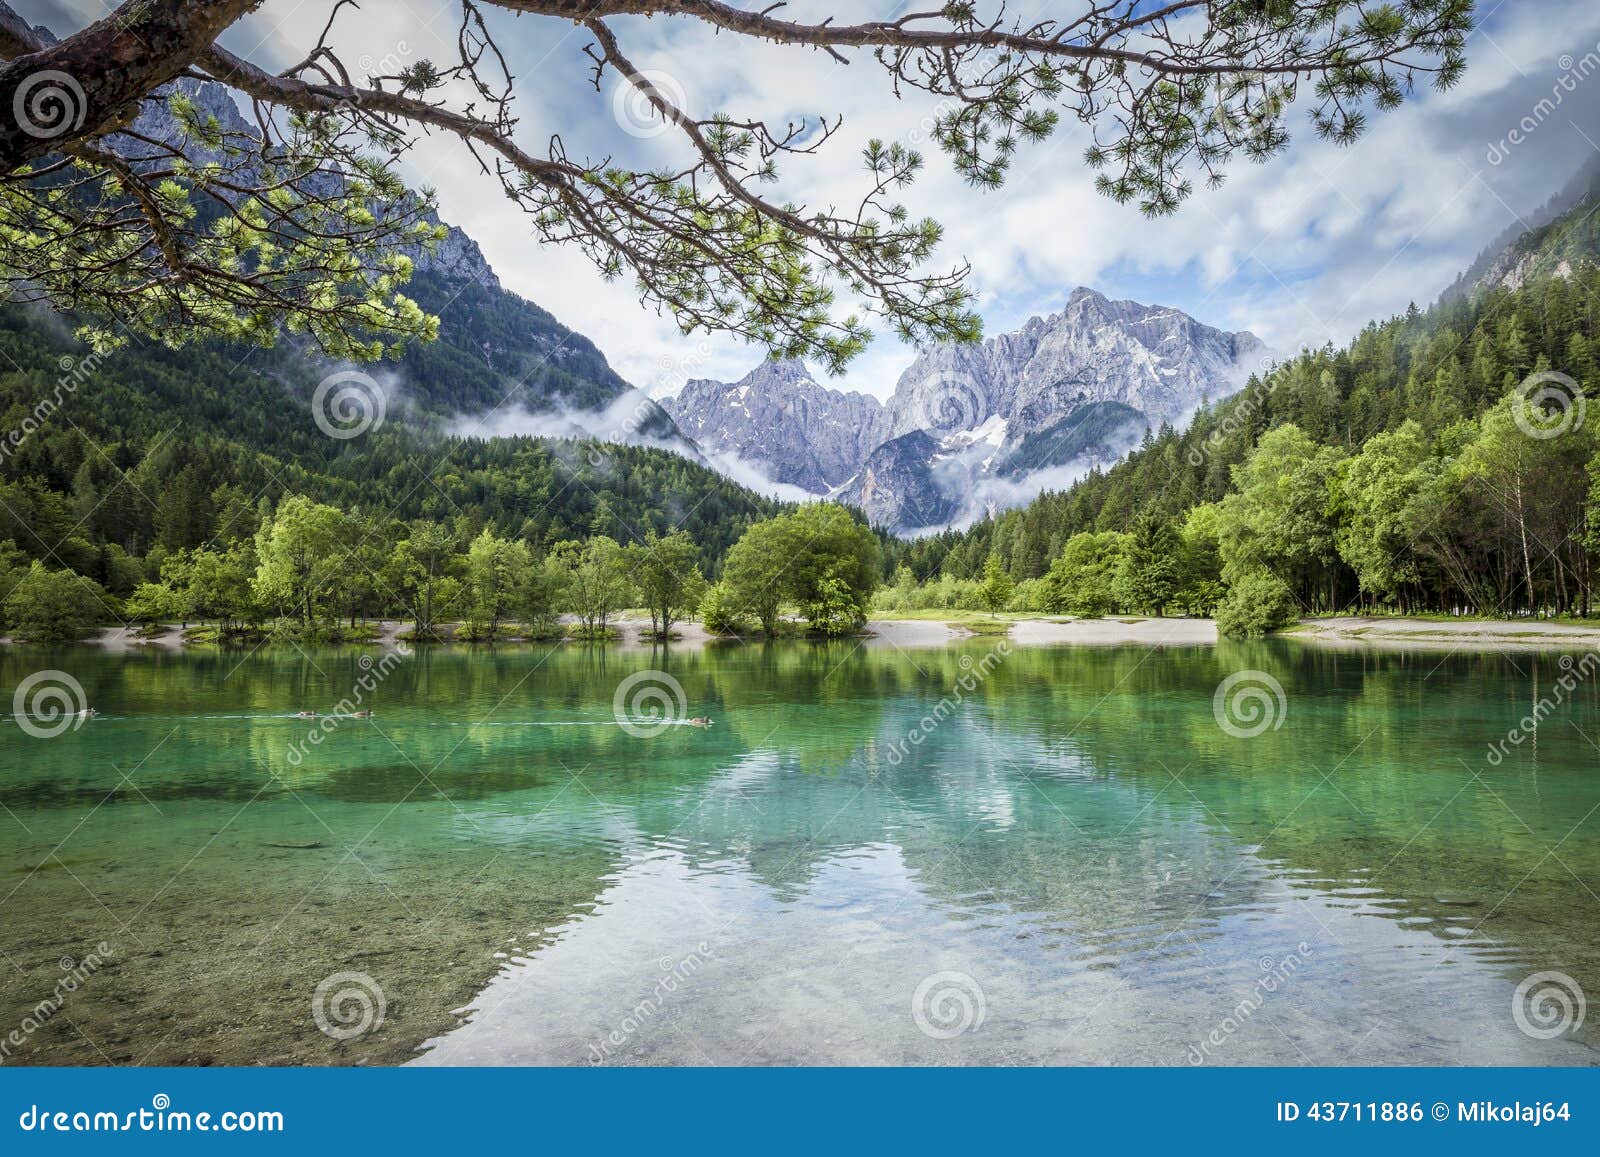 zelenci pond near kranjska gora in triglav national park